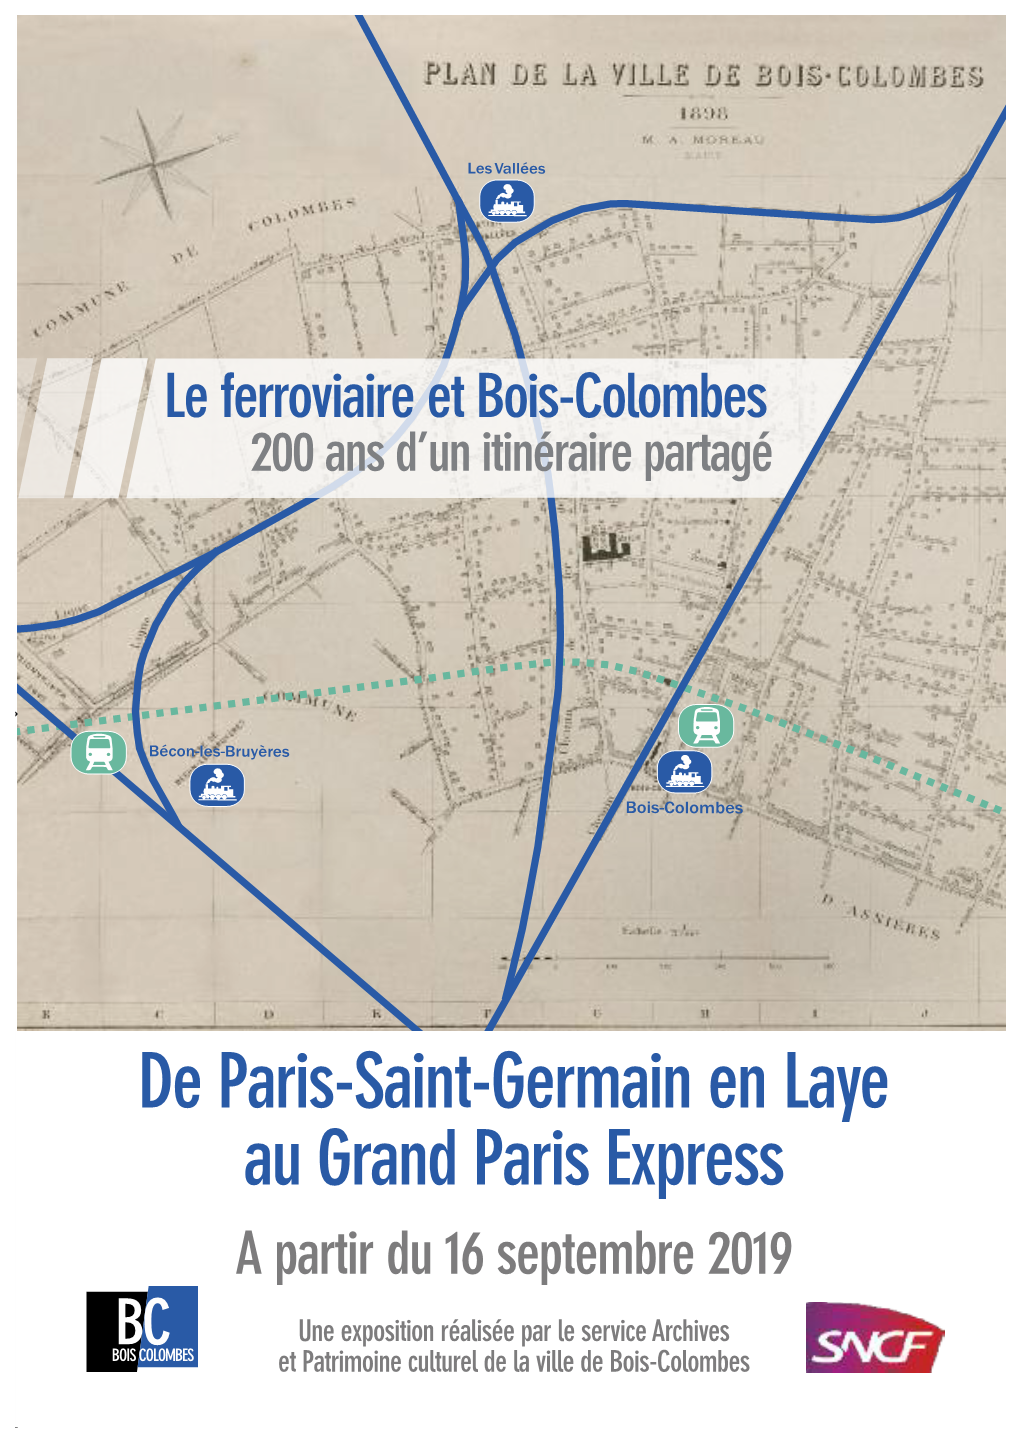 De Paris-Saint-Germain En Laye Au Grand Paris Express a Partir Du 16 Septembre 2019